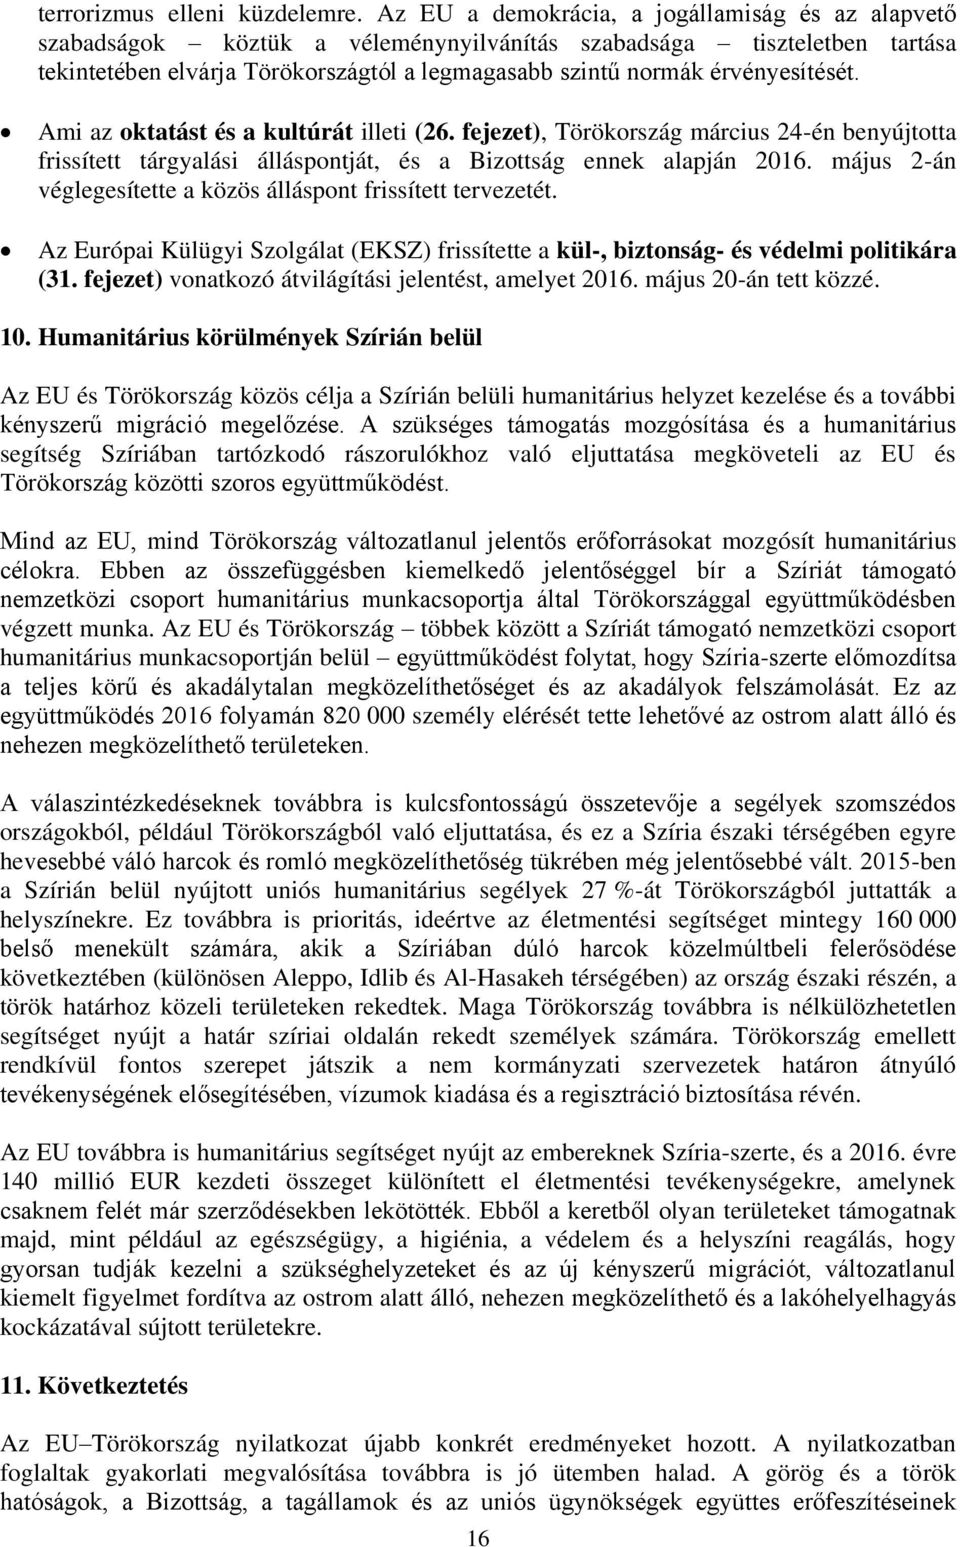 érvényesítését. Ami az oktatást és a kultúrát illeti (26. fejezet), Törökország március 24-én benyújtotta frissített tárgyalási álláspontját, és a Bizottság ennek alapján 2016.